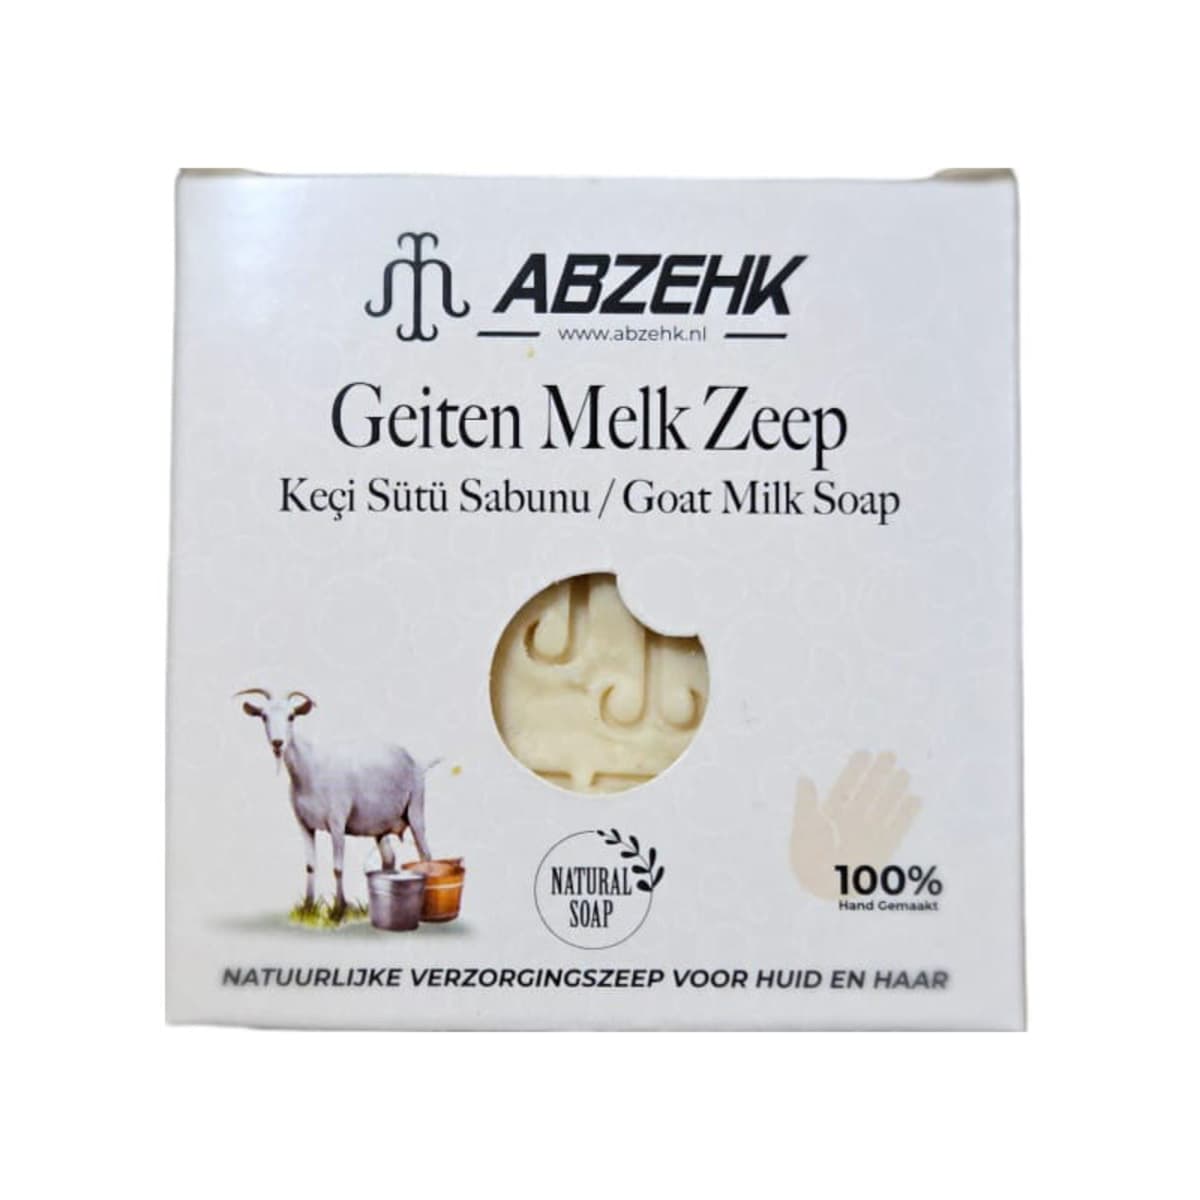 Abzehk - Handzeep, Sabun, Handsoap - Geiten Melk, Keçi Sütü, Goat Milk - 125gr